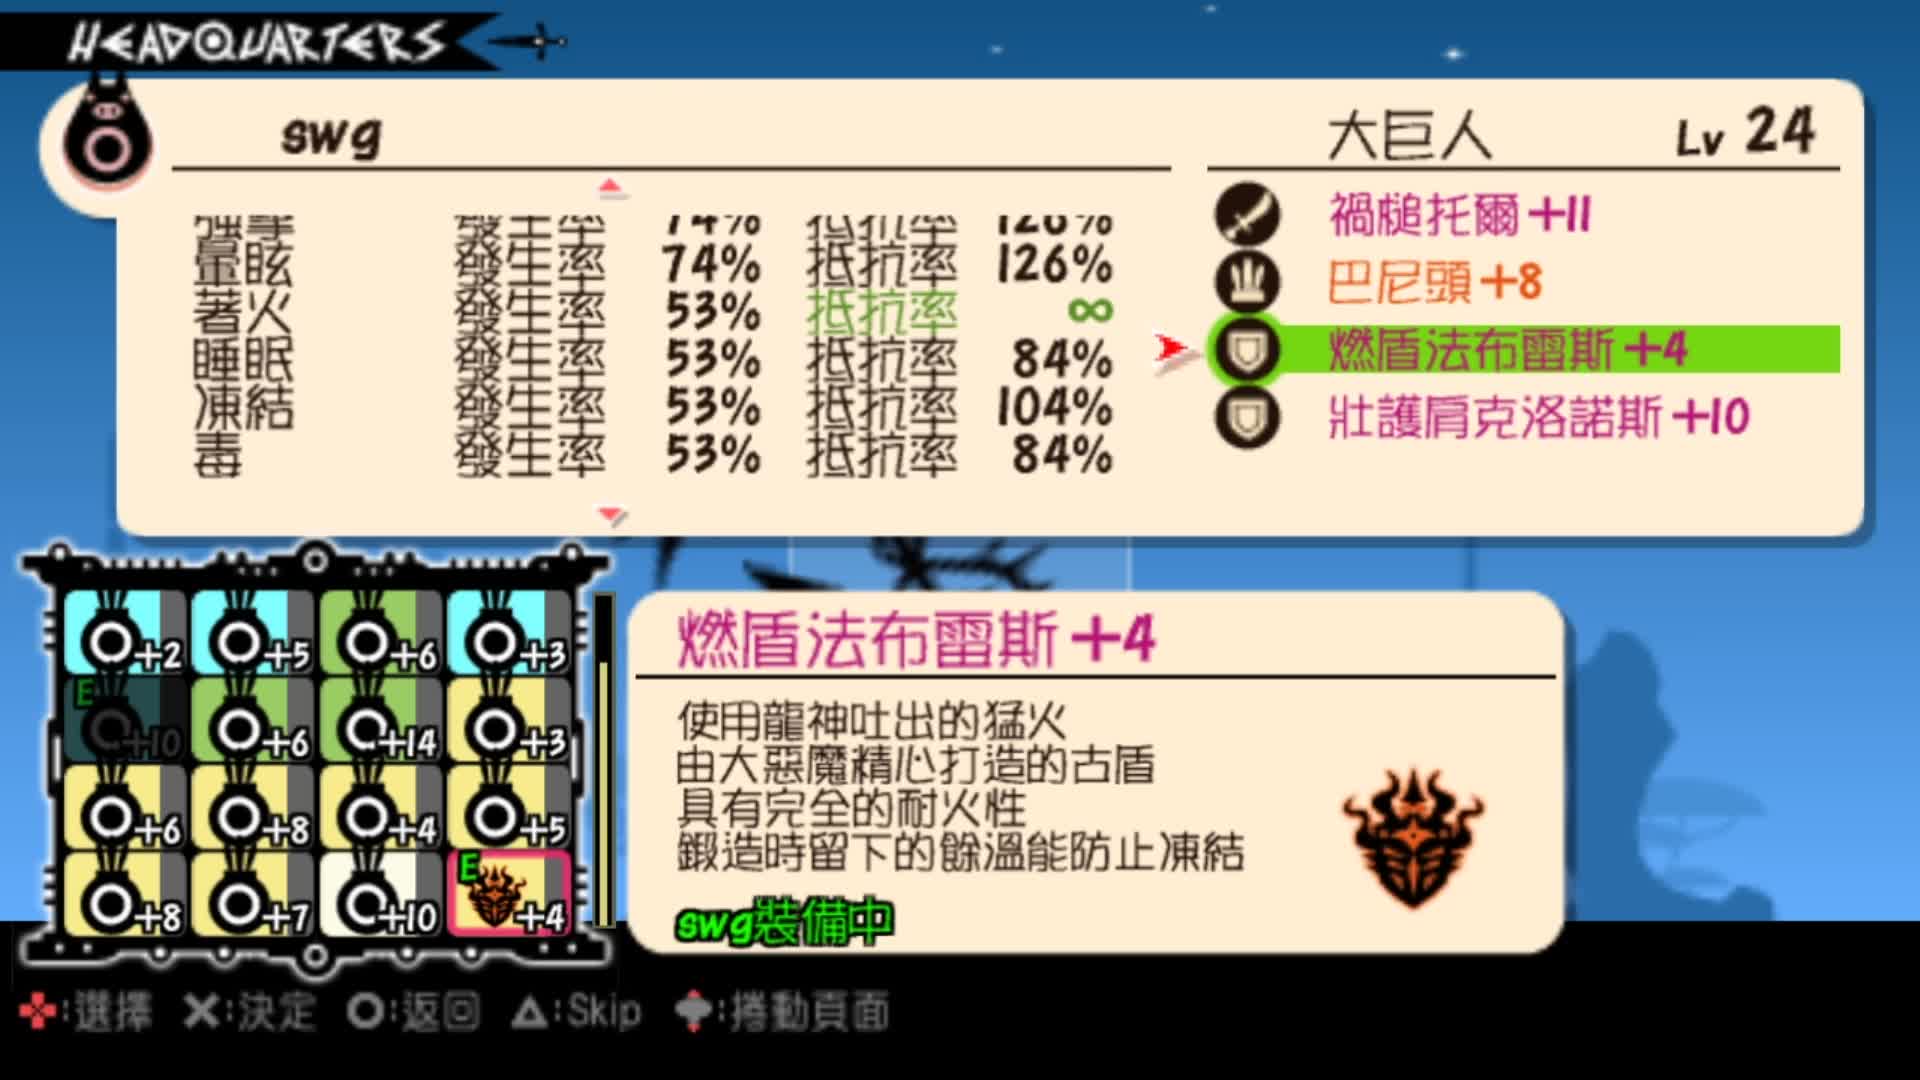 第13期 PSP战鼓啪嗒砰3汉化版 音乐节奏游戏 娱乐解说